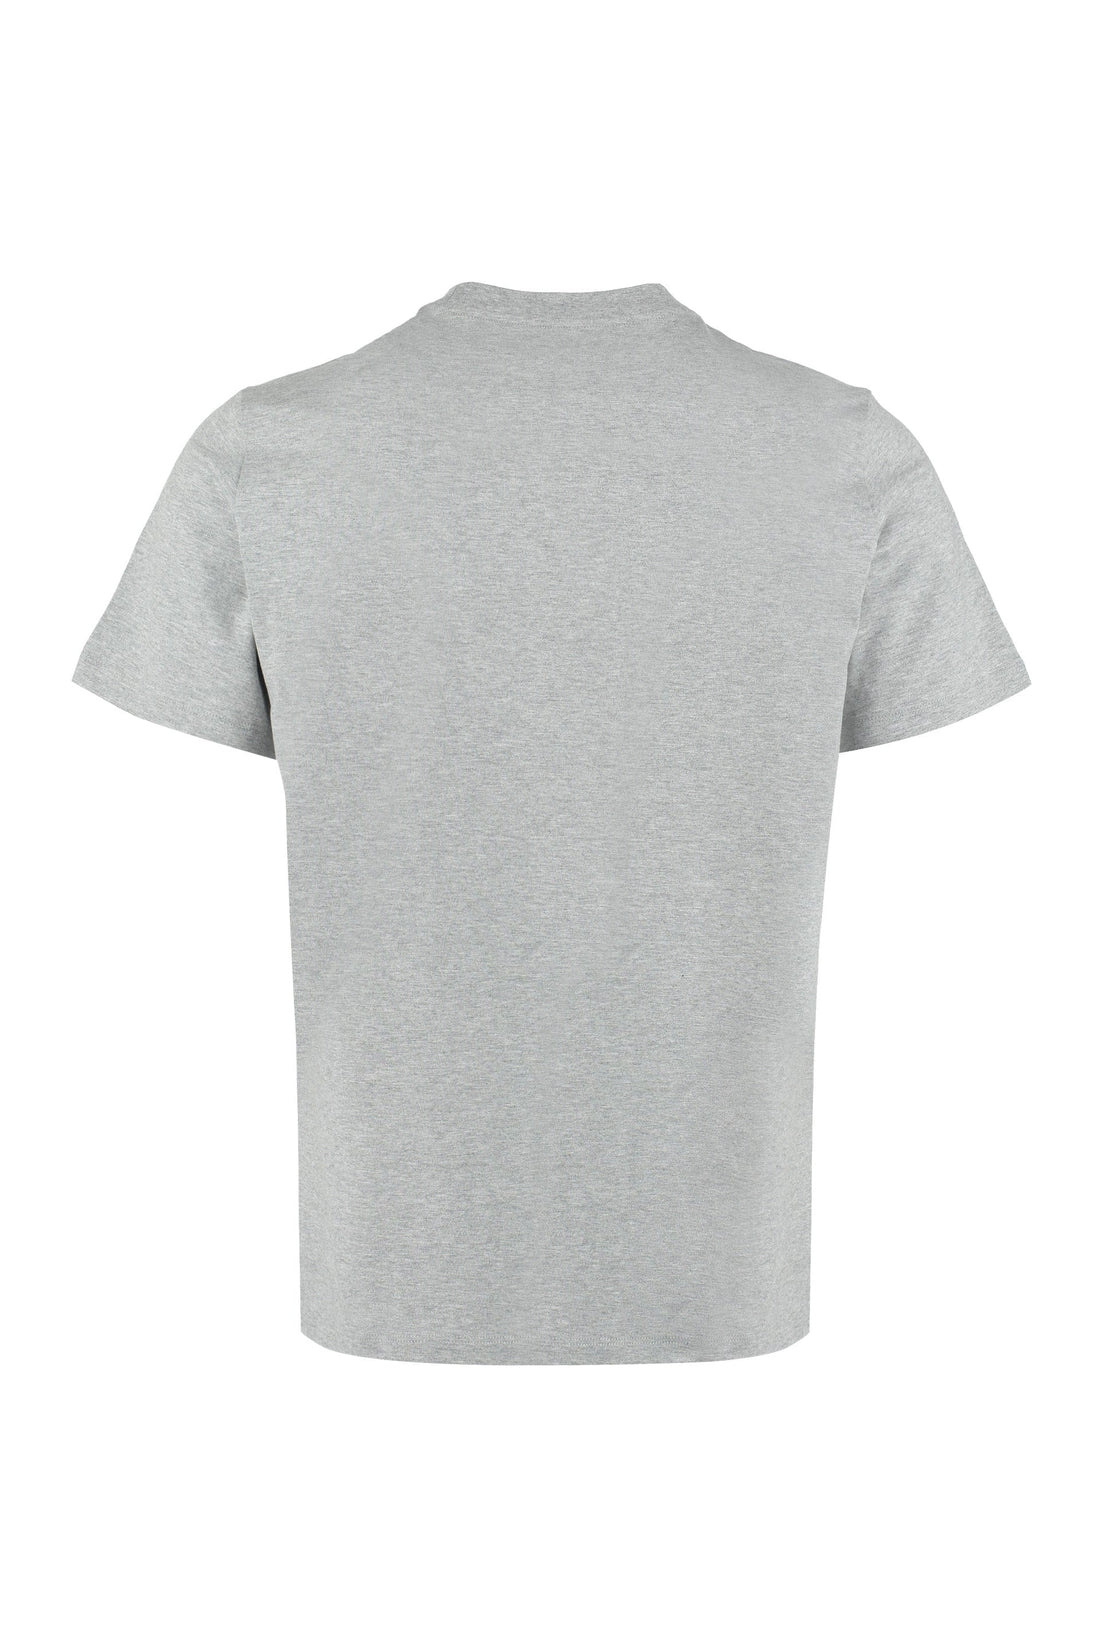 MCM-OUTLET-SALE-Logo cotton t-shirt-ARCHIVIST